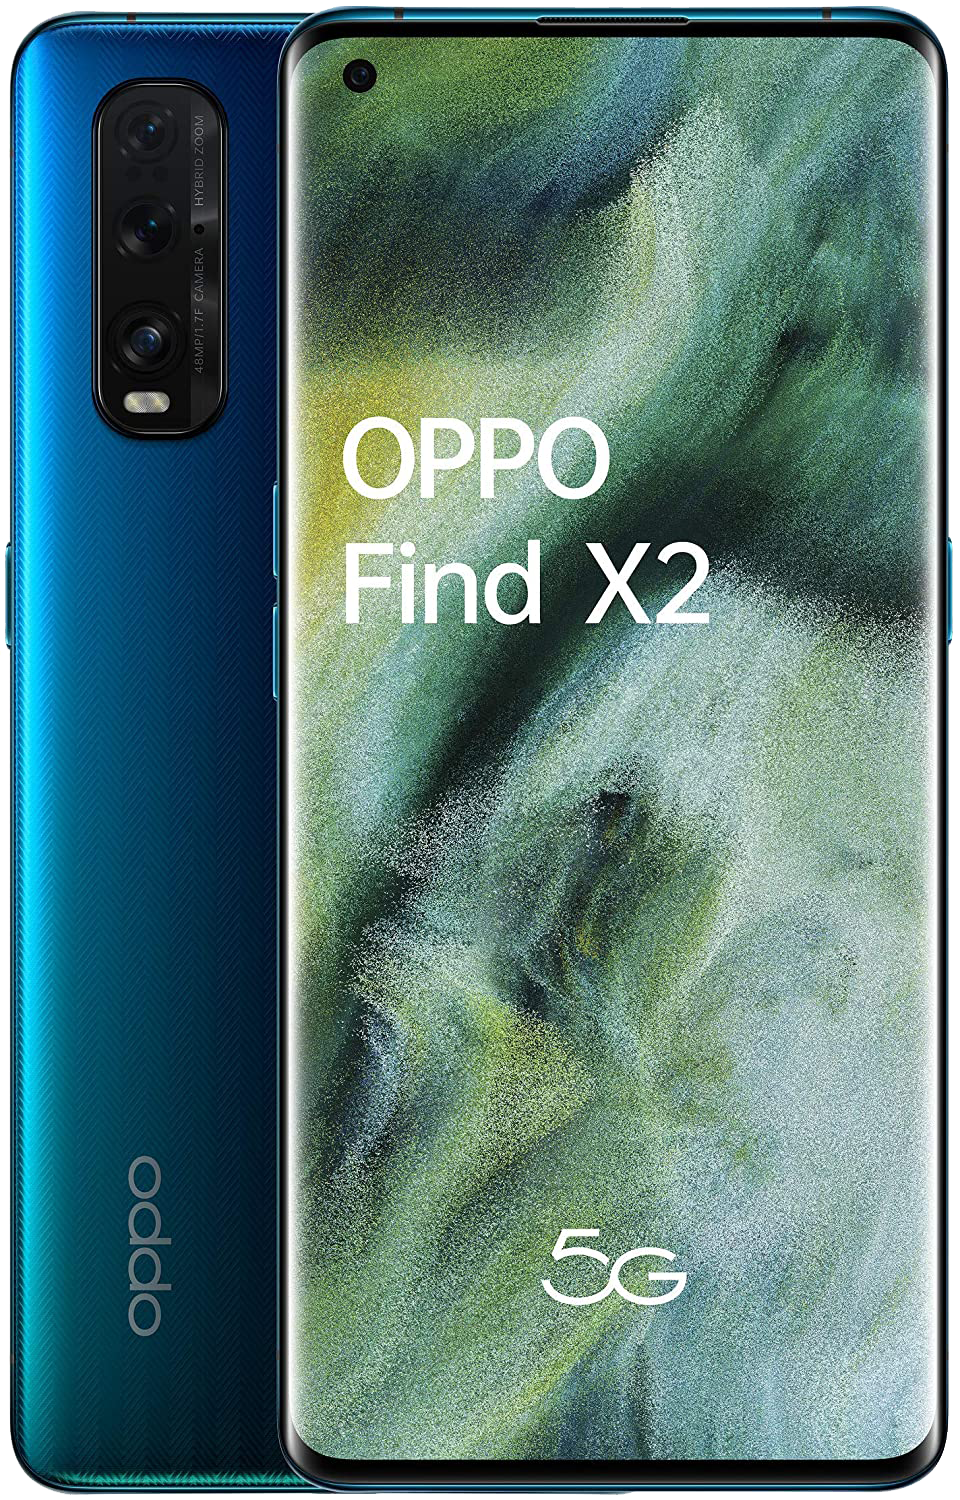 OPPO Find X2 blau - Ohne Vertrag